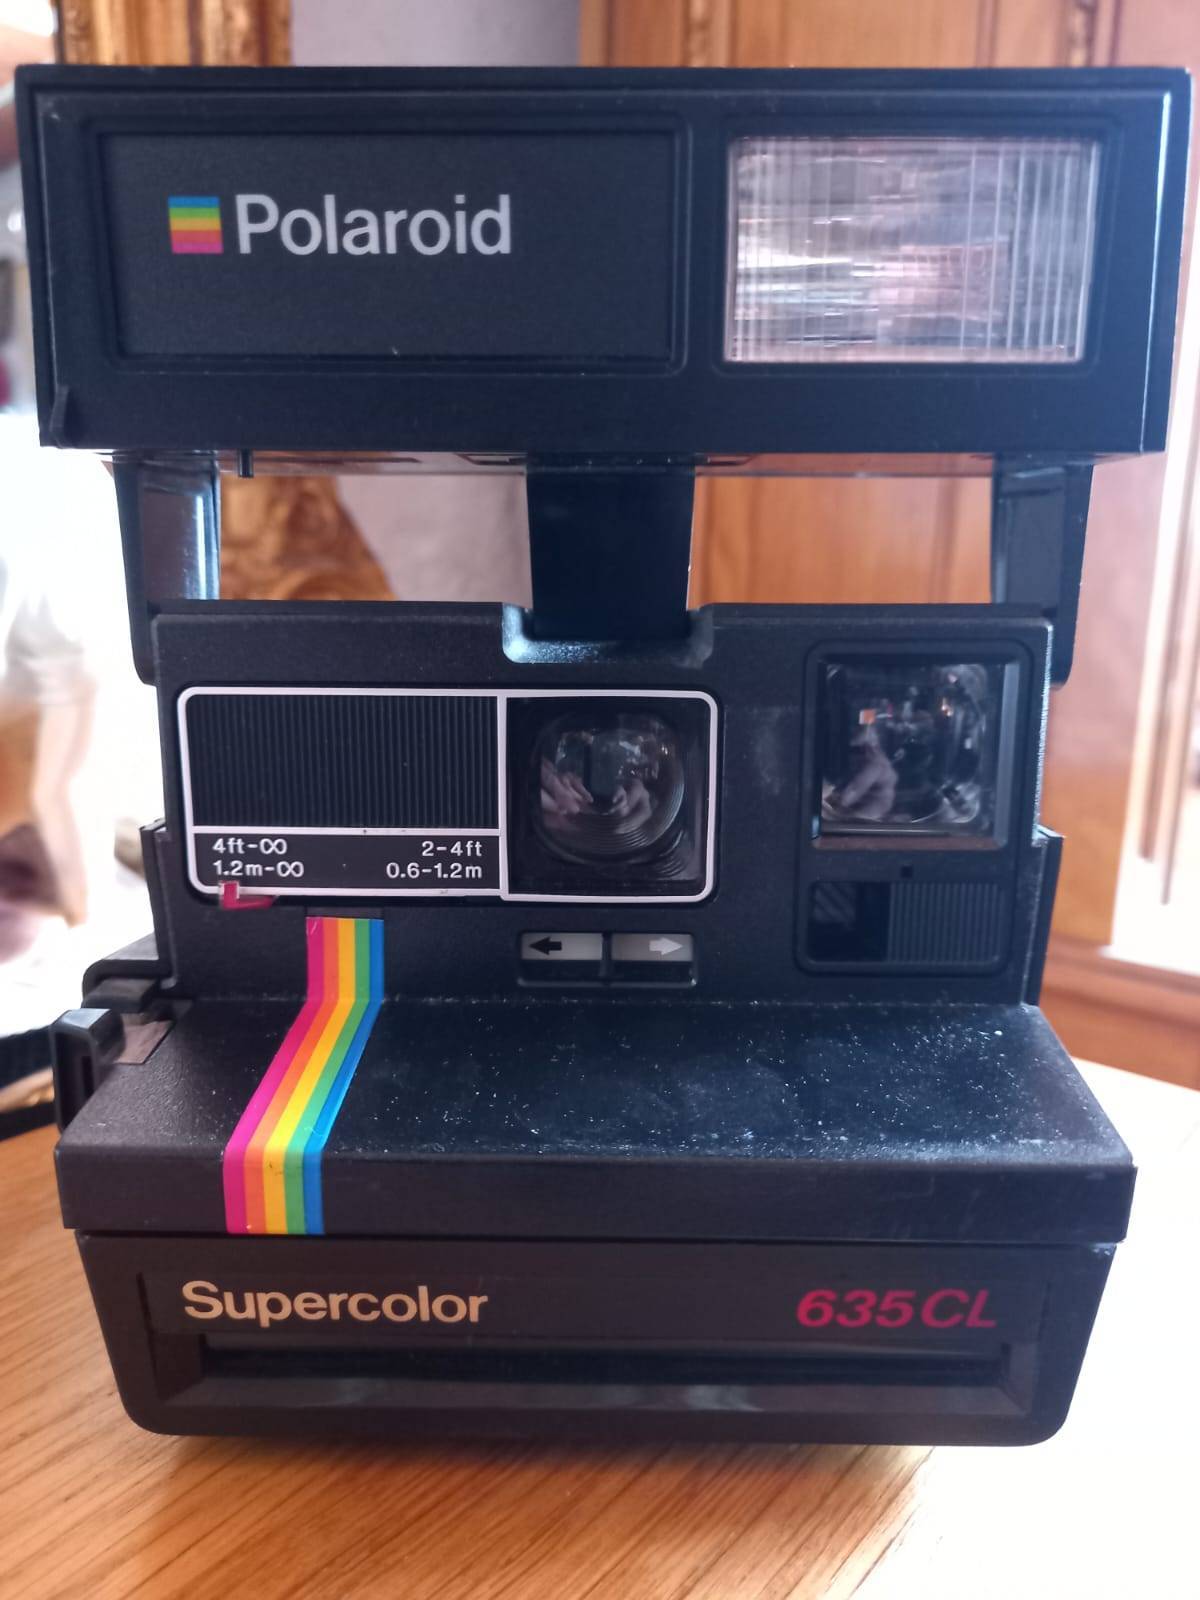 Cámara de fotos Polaroid supercolor 635CL